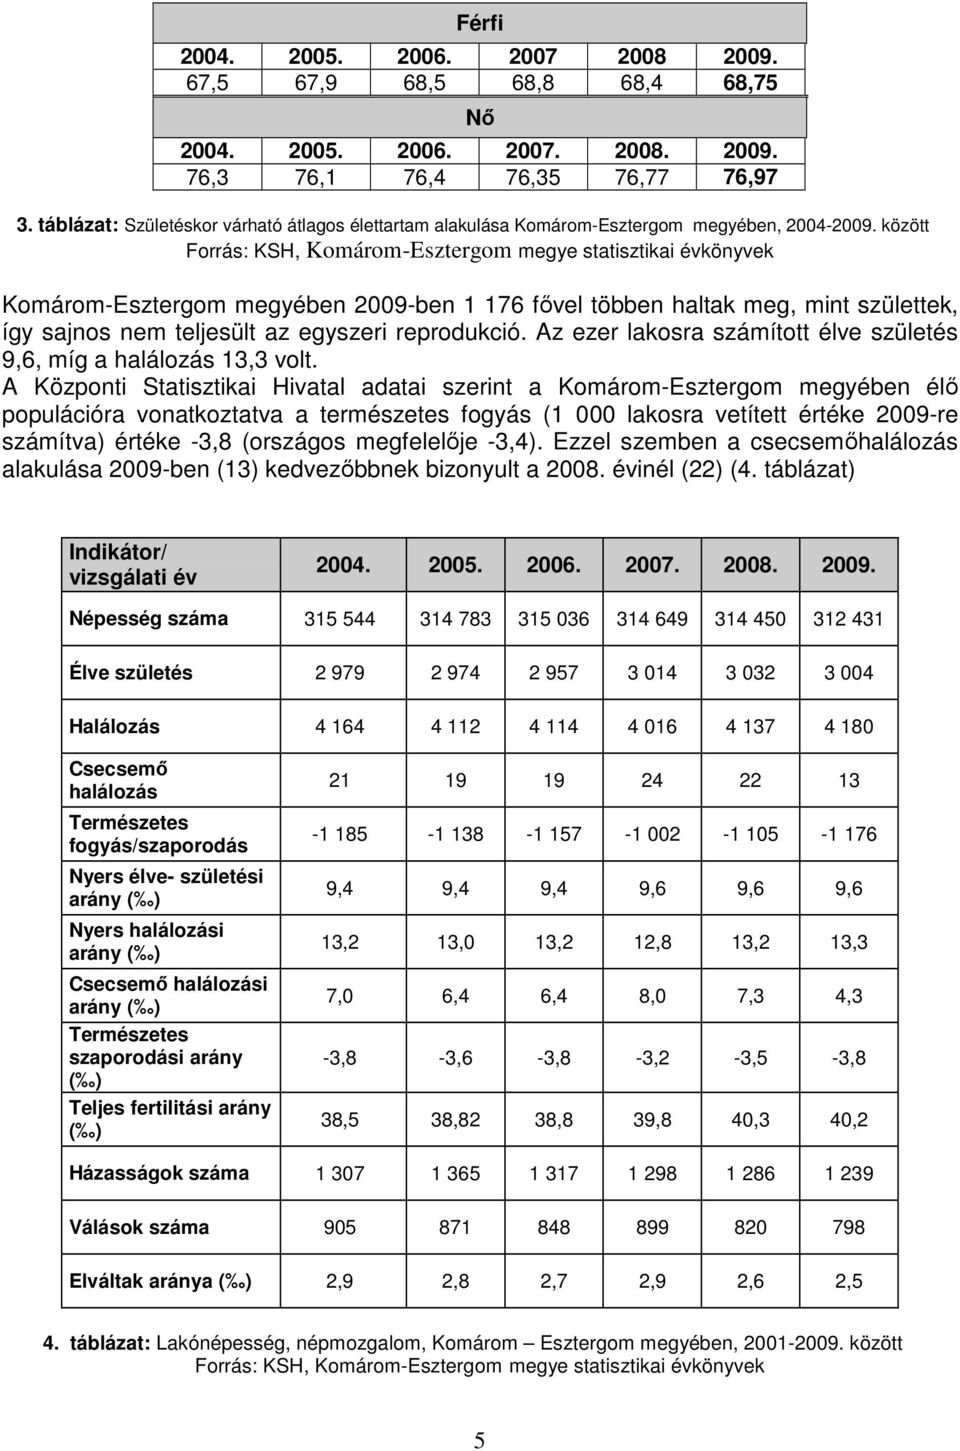 között Forrás: KSH, Komárom-Esztergom megye statisztikai évkönyvek Komárom-Esztergom megyében 2009-ben 1 176 fıvel többen haltak meg, mint születtek, így sajnos nem teljesült az egyszeri reprodukció.